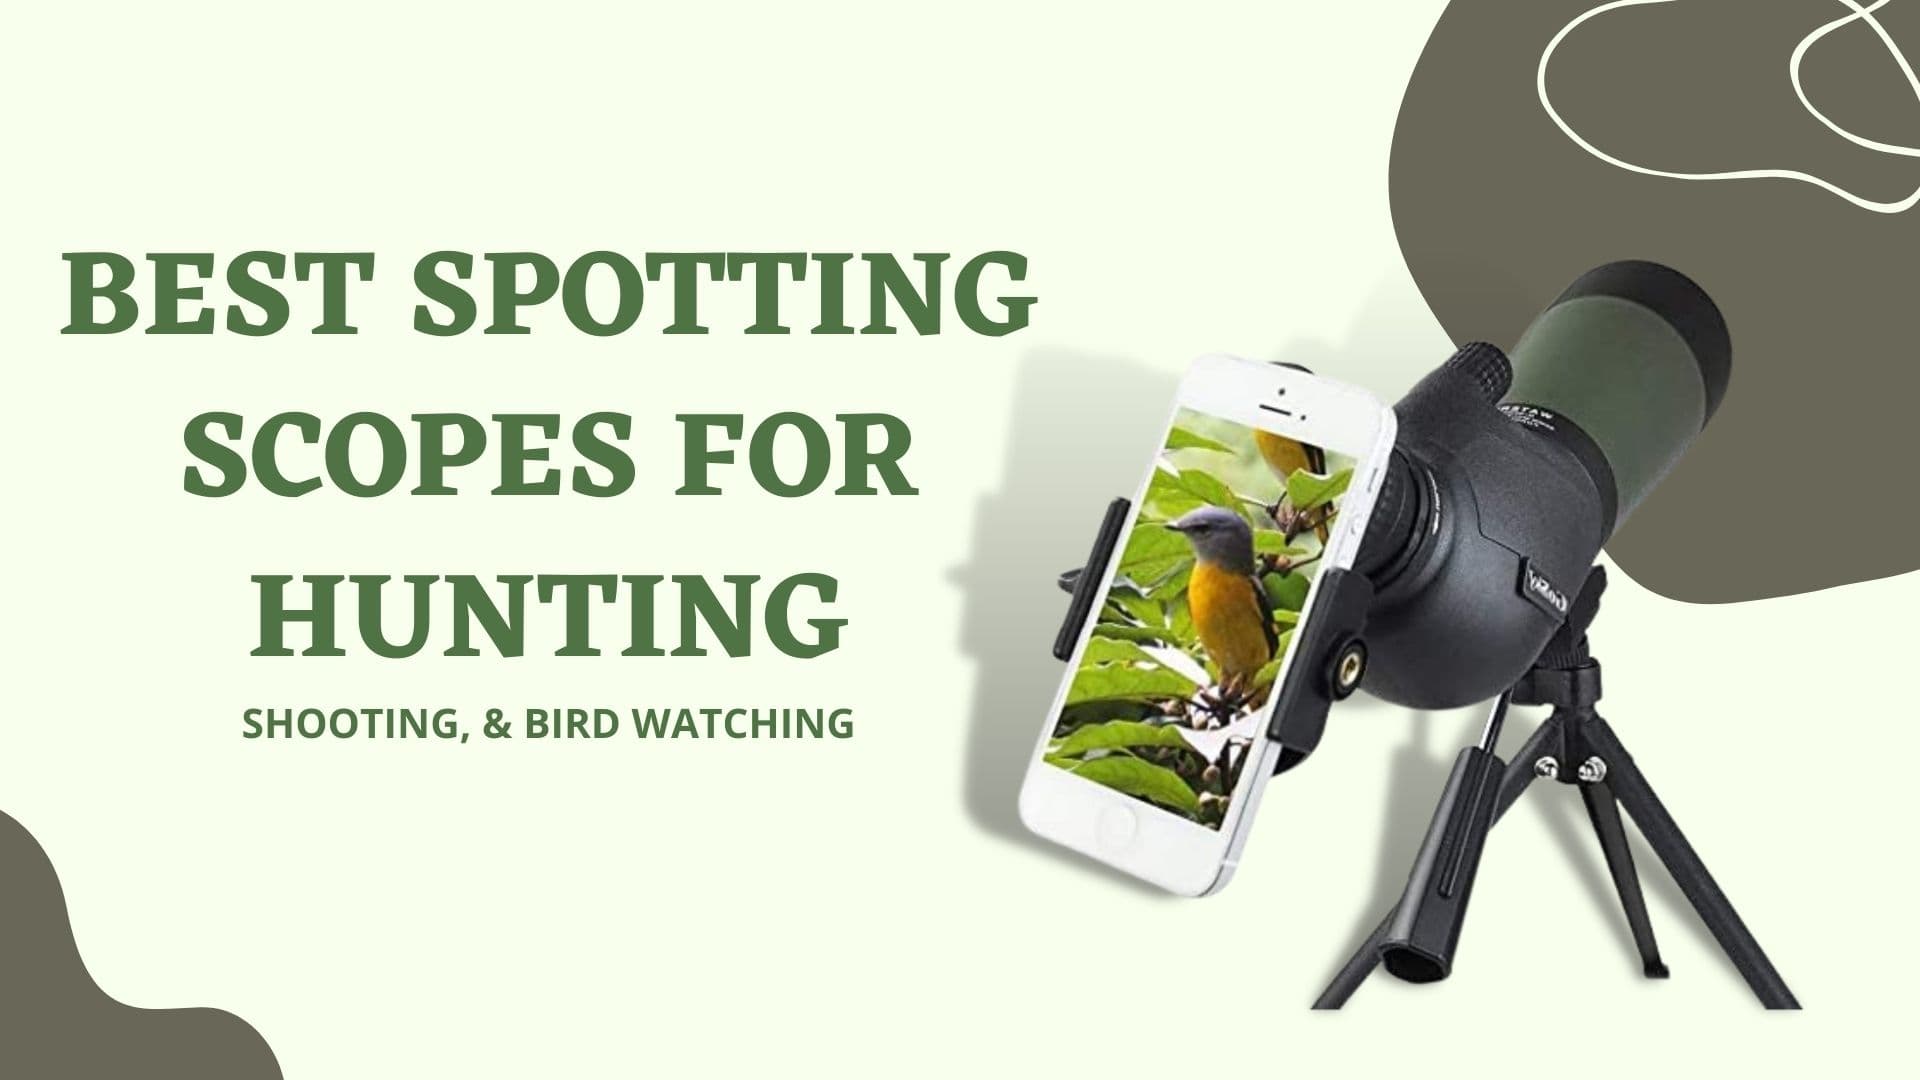 Best Spotting Scopes for Hunting